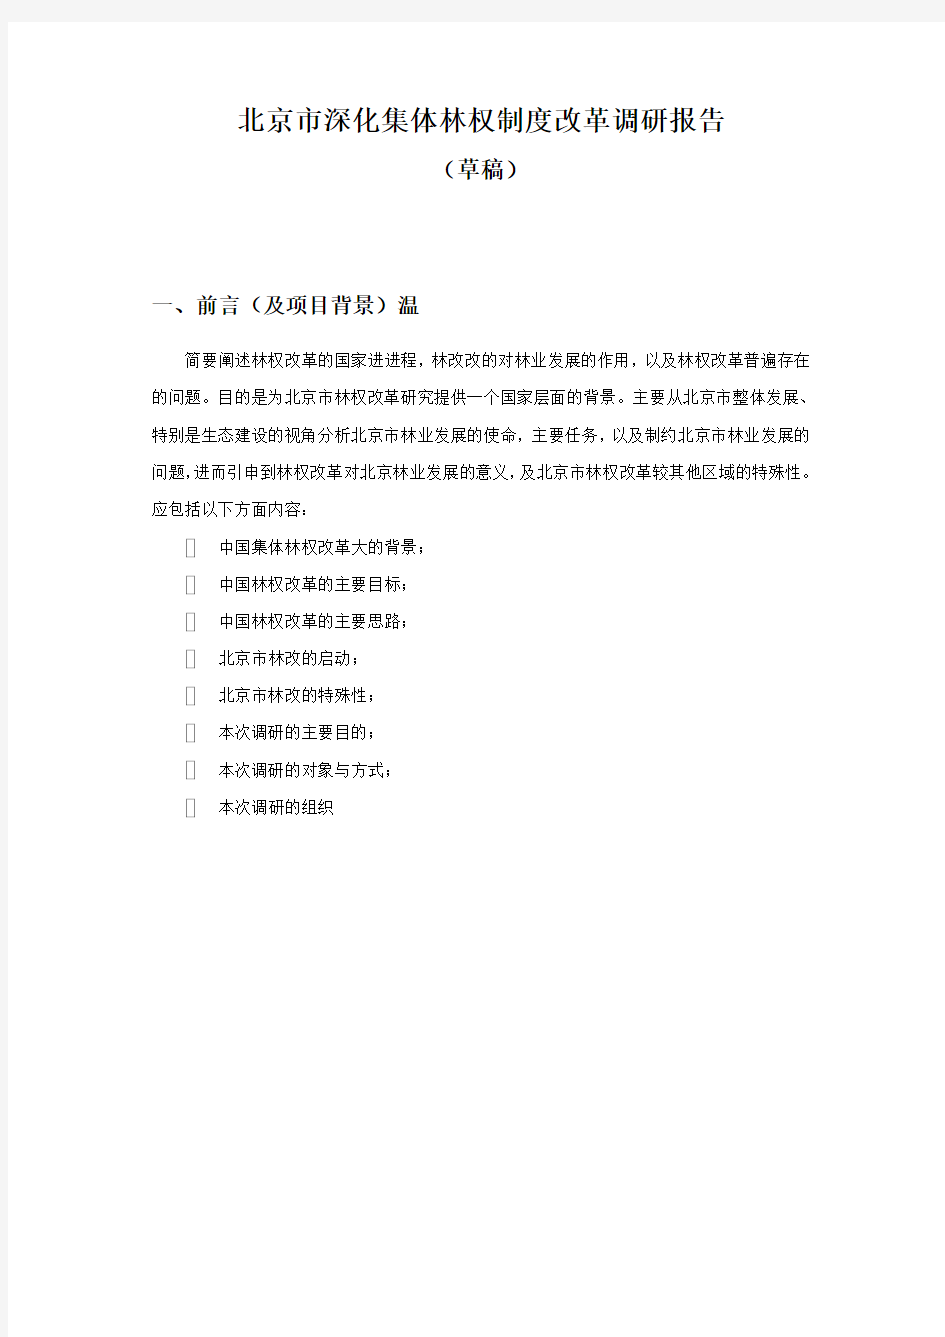 修改稿,10-24北京市深化集体林权制度改革调研报告